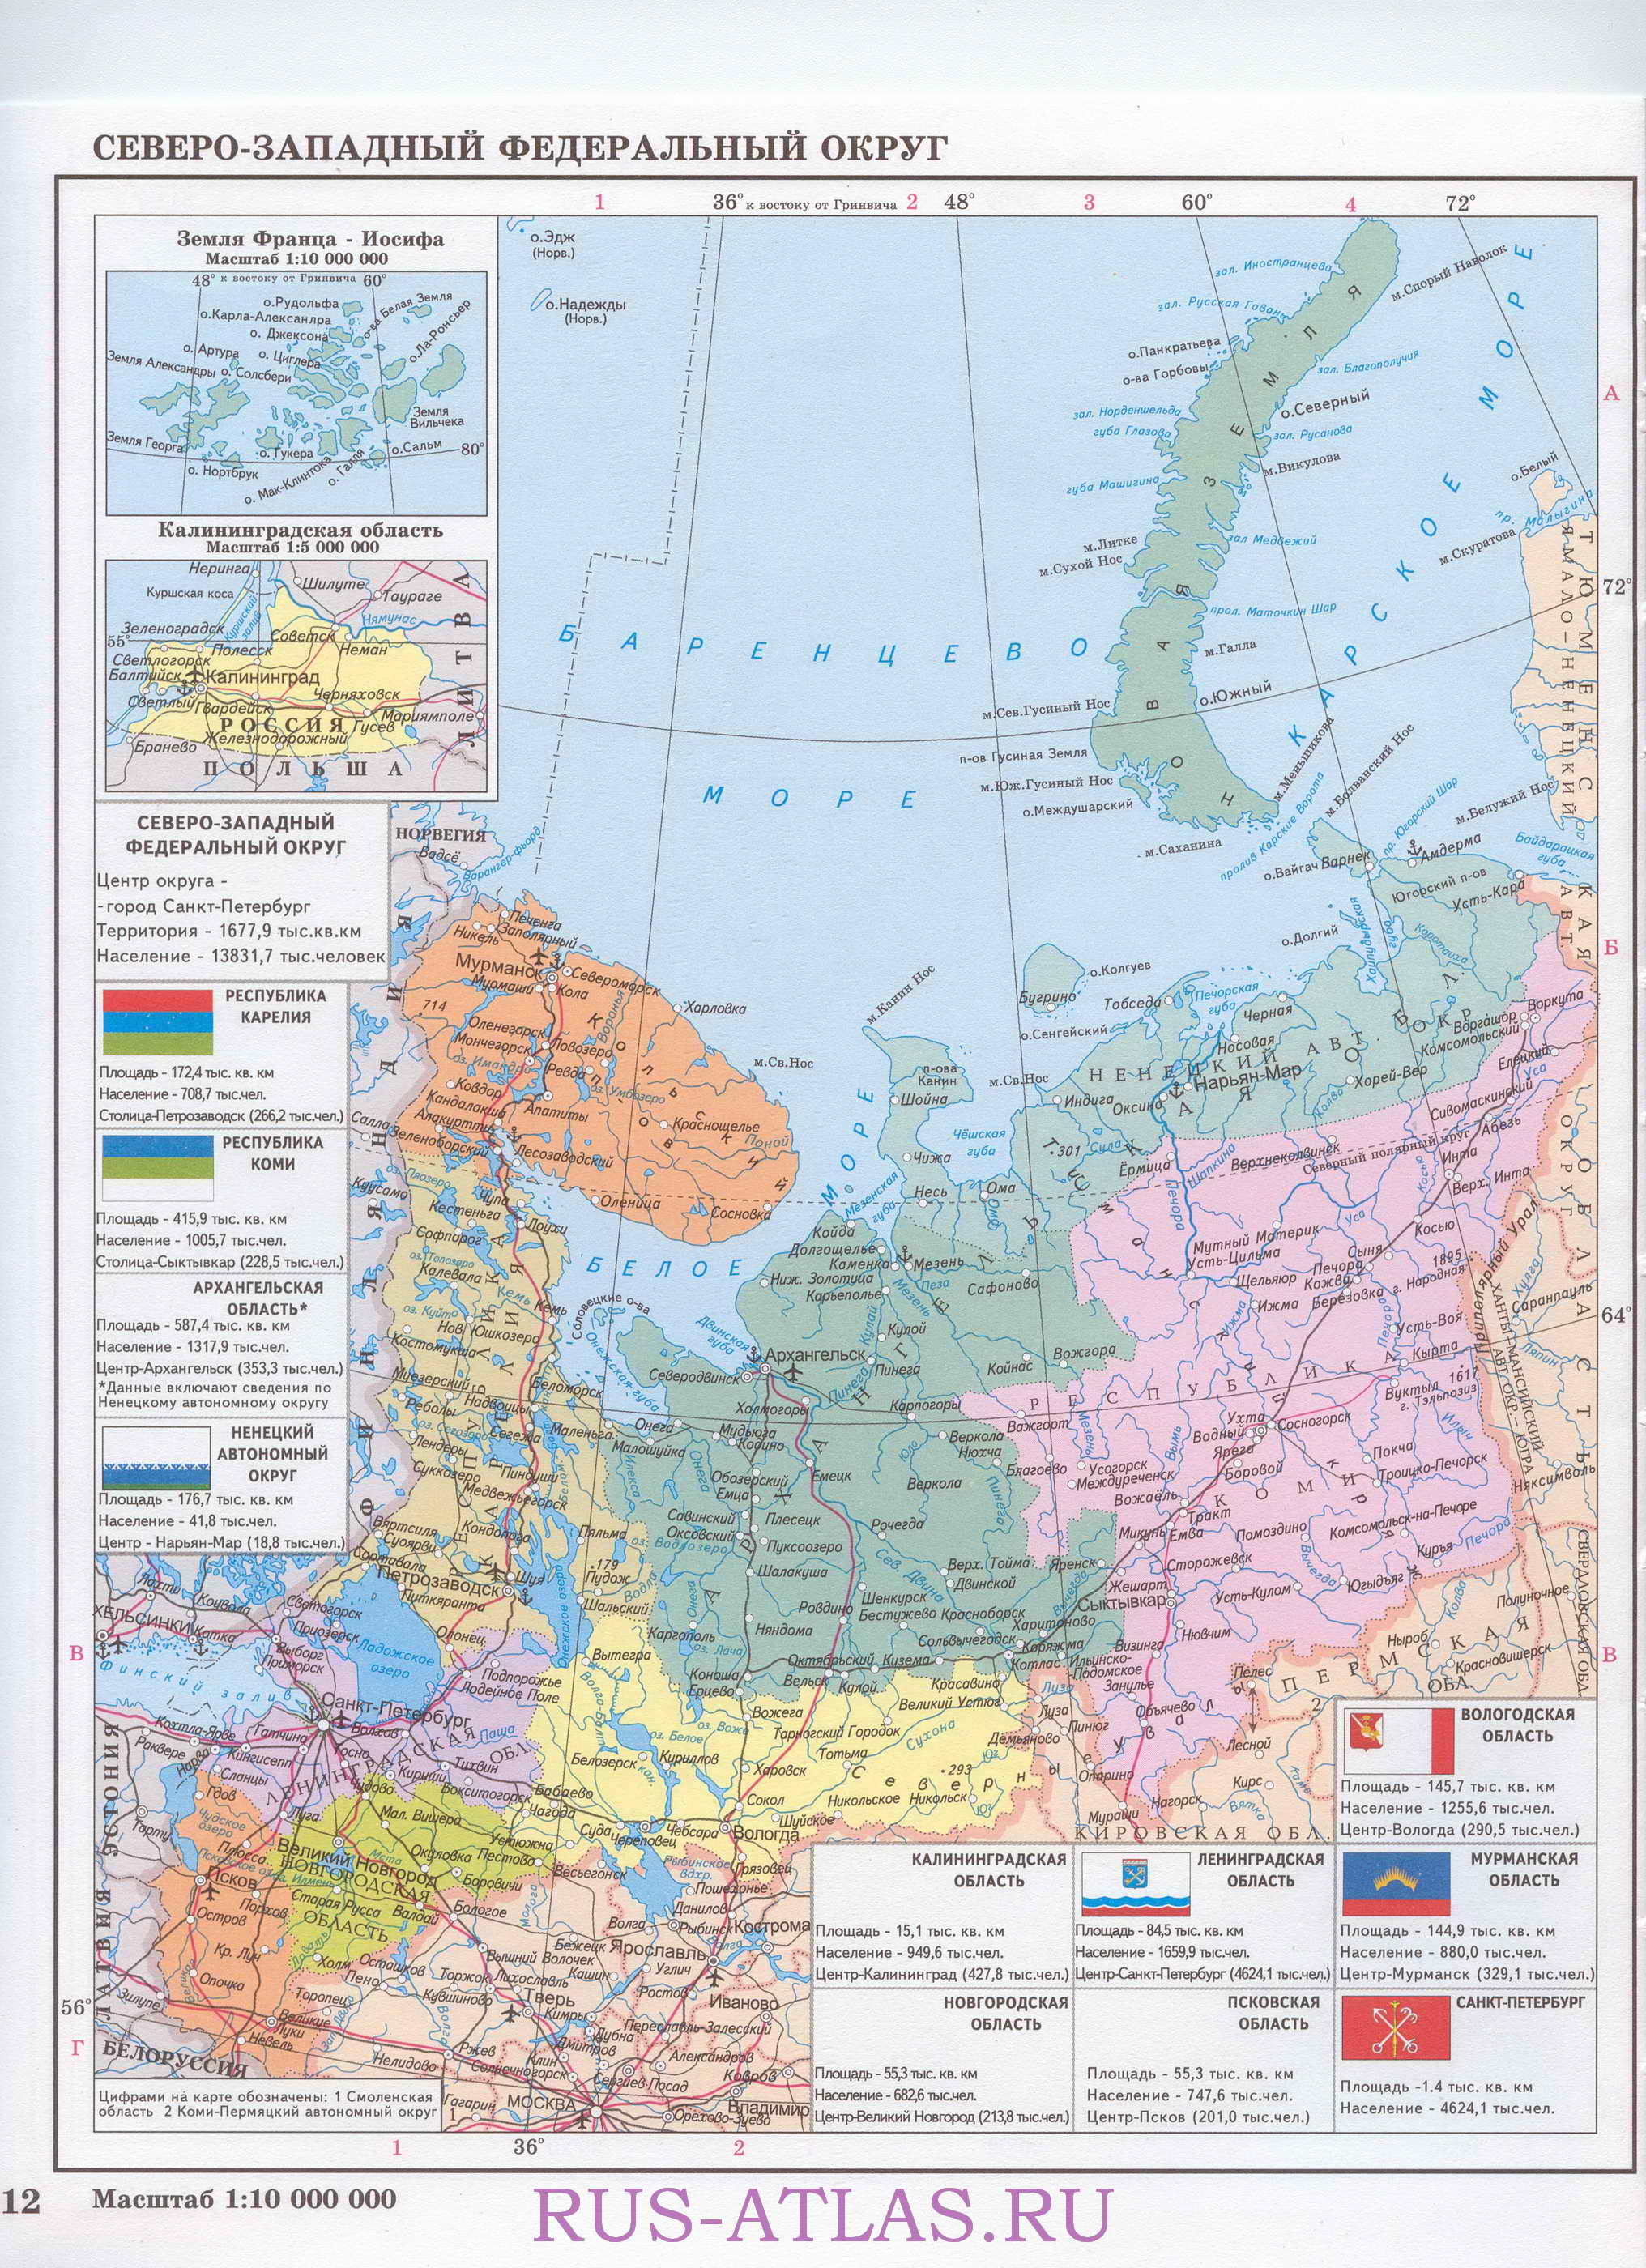  Карта Северо-Западного федерального округа. Подробная карта Северо-Западного округа России, A0 - 